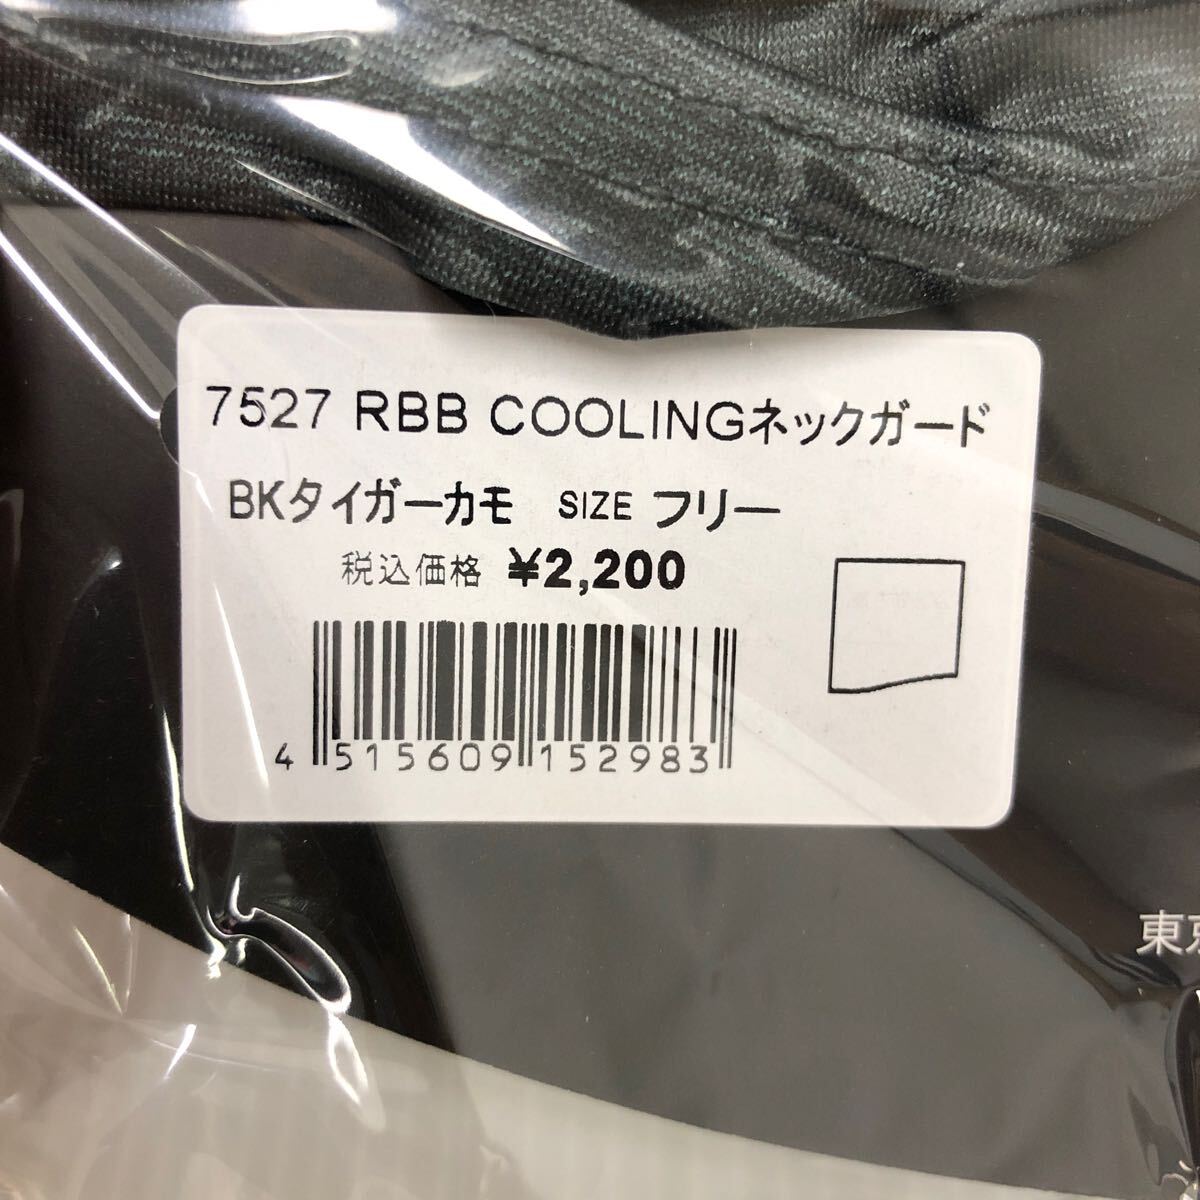 双進 RBB COOLINGネックガード ブラックタイガーカモ【新品未使用品】N3149の画像3